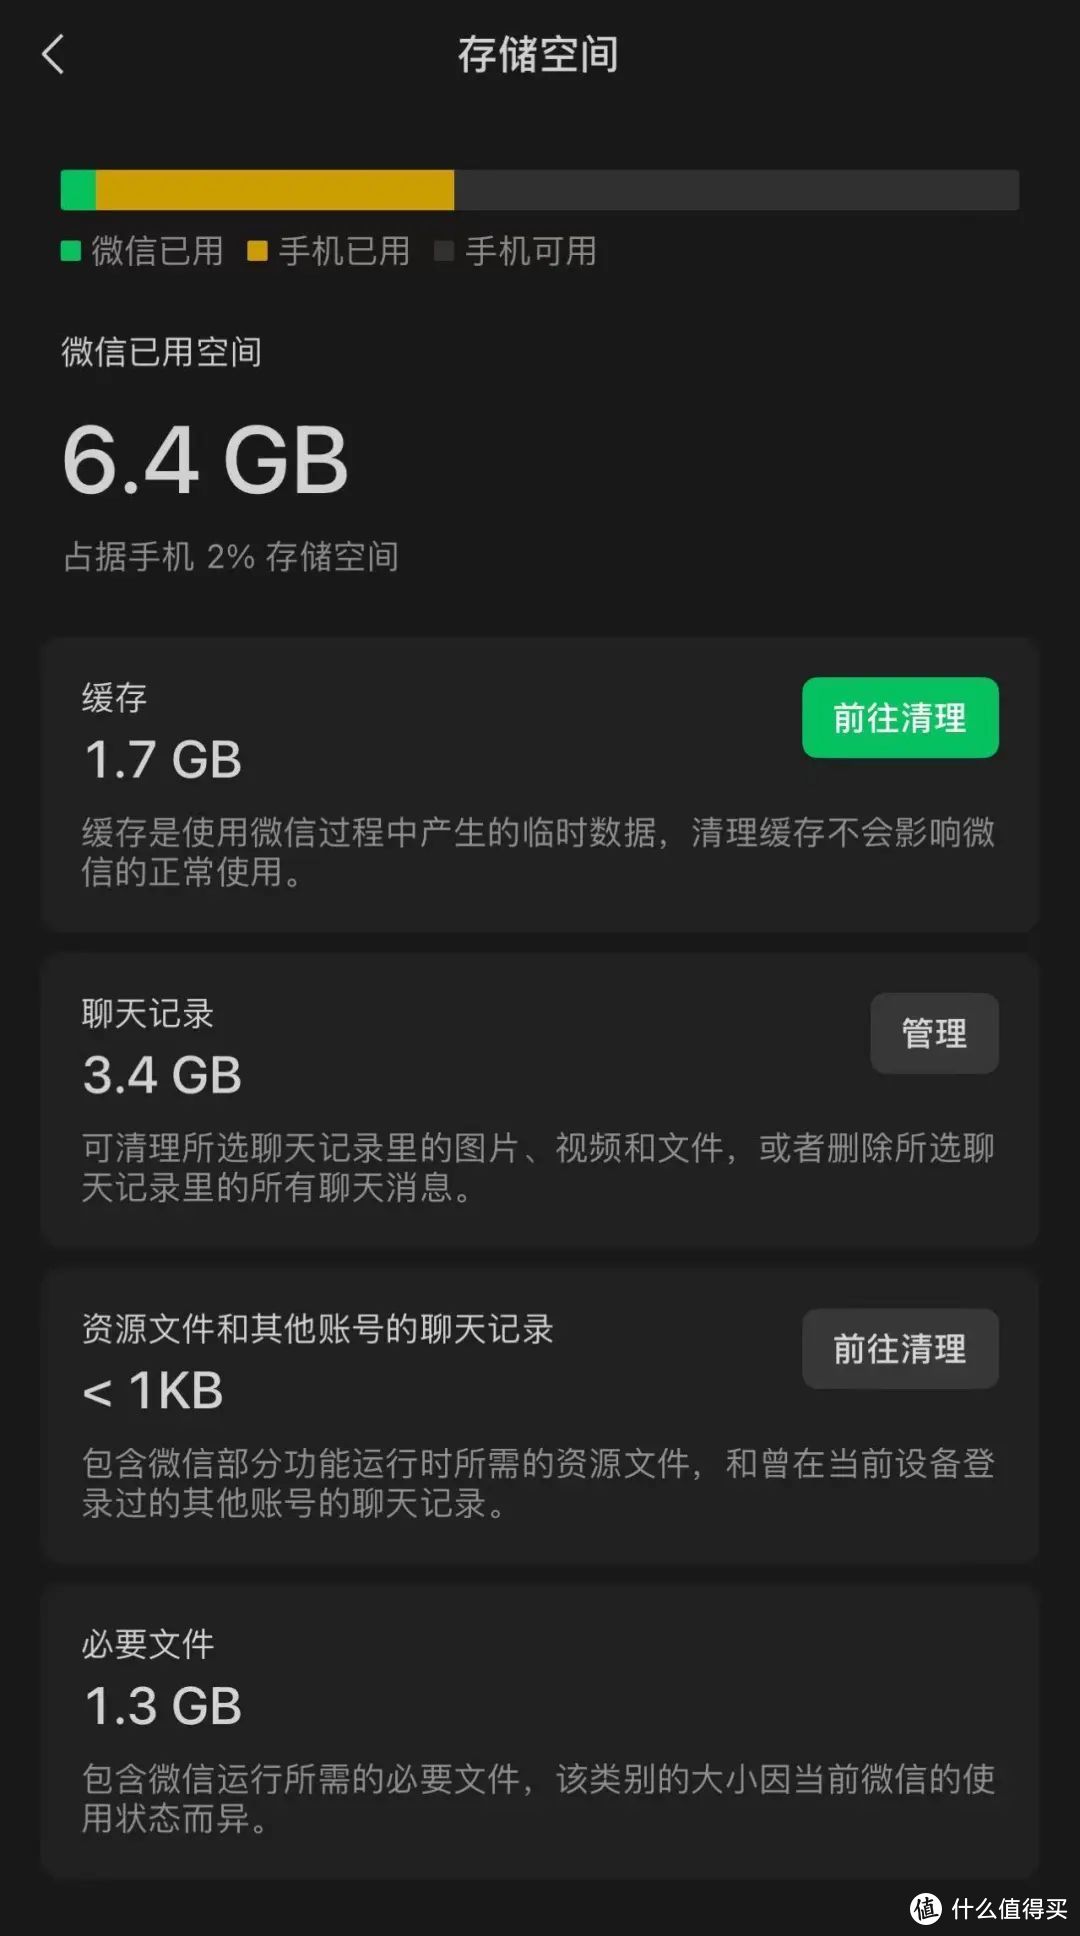 iOS微信8.0.46正式版更新:存储空间清理更轻松、VIP音乐随便听